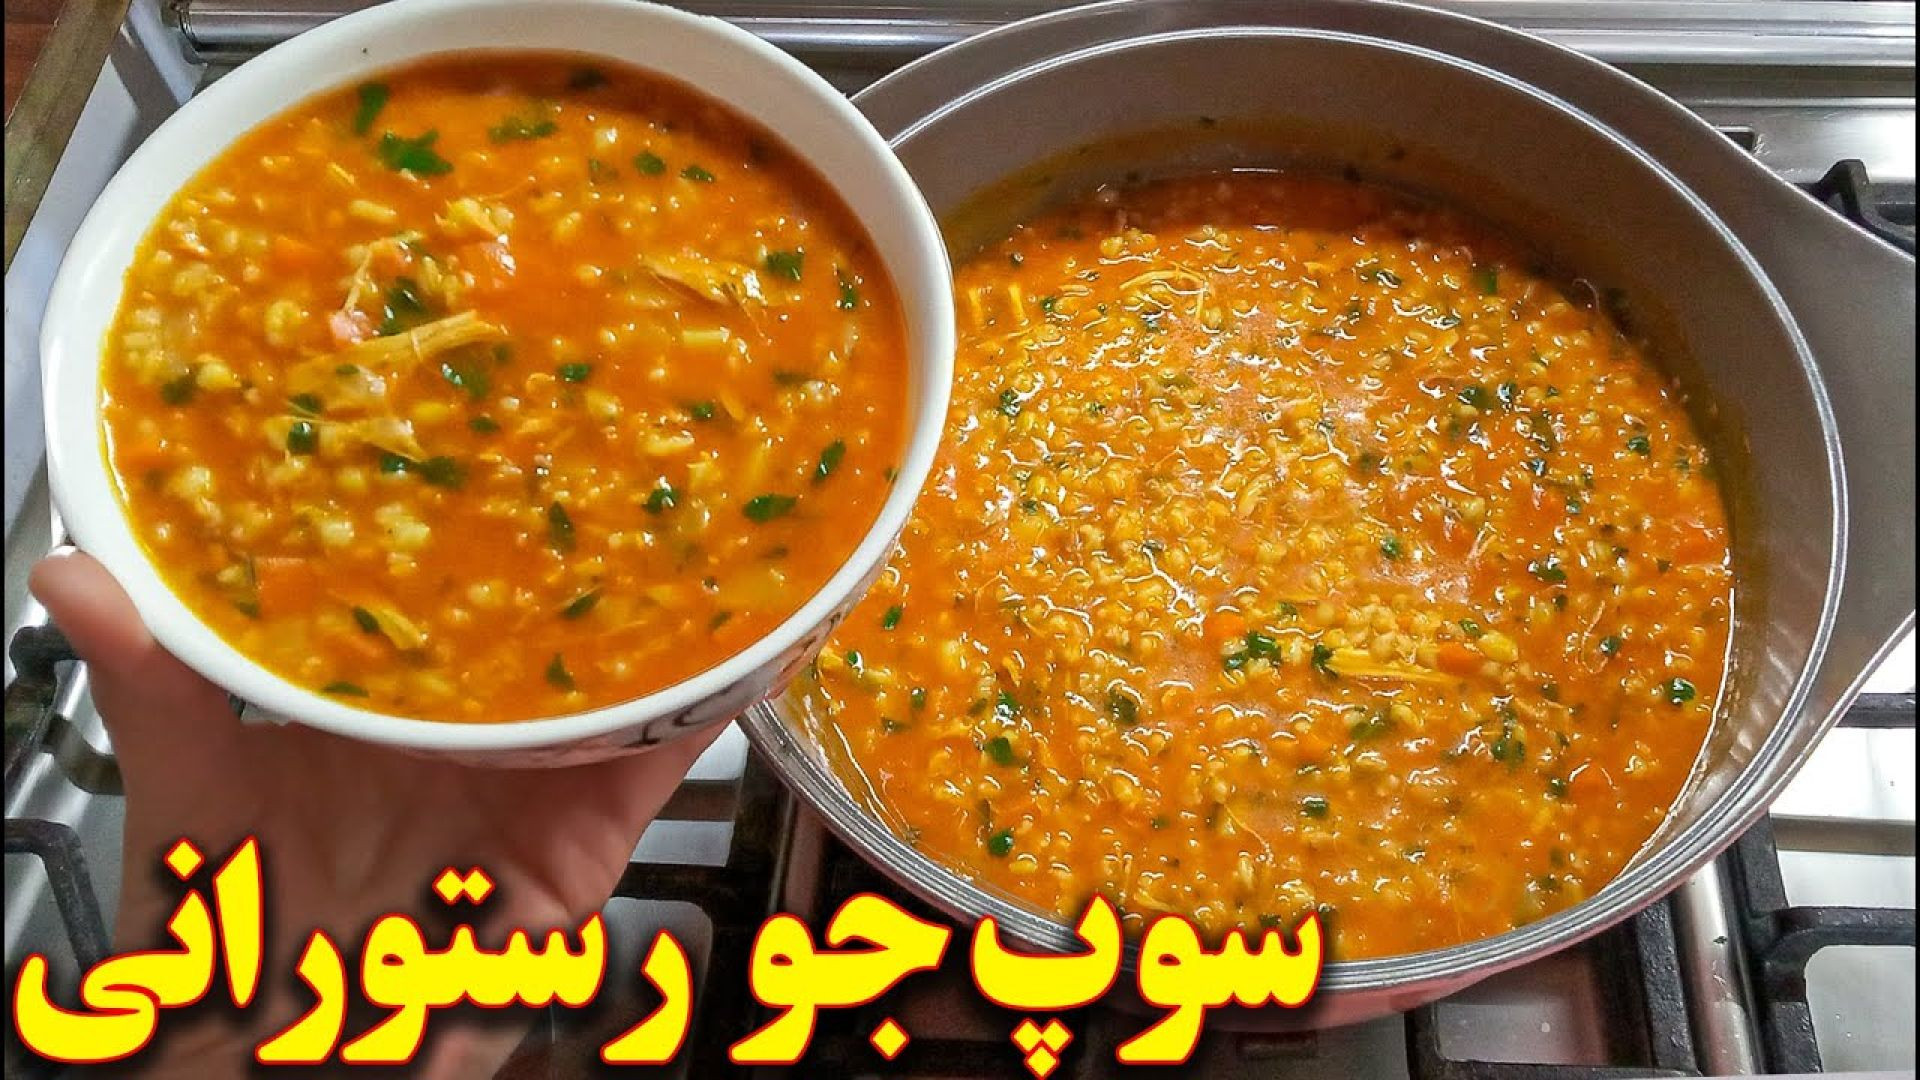 سوپ جو رستورانی خوشمزه  | آموزش آشپزی ایرانی ( یوتیوب )